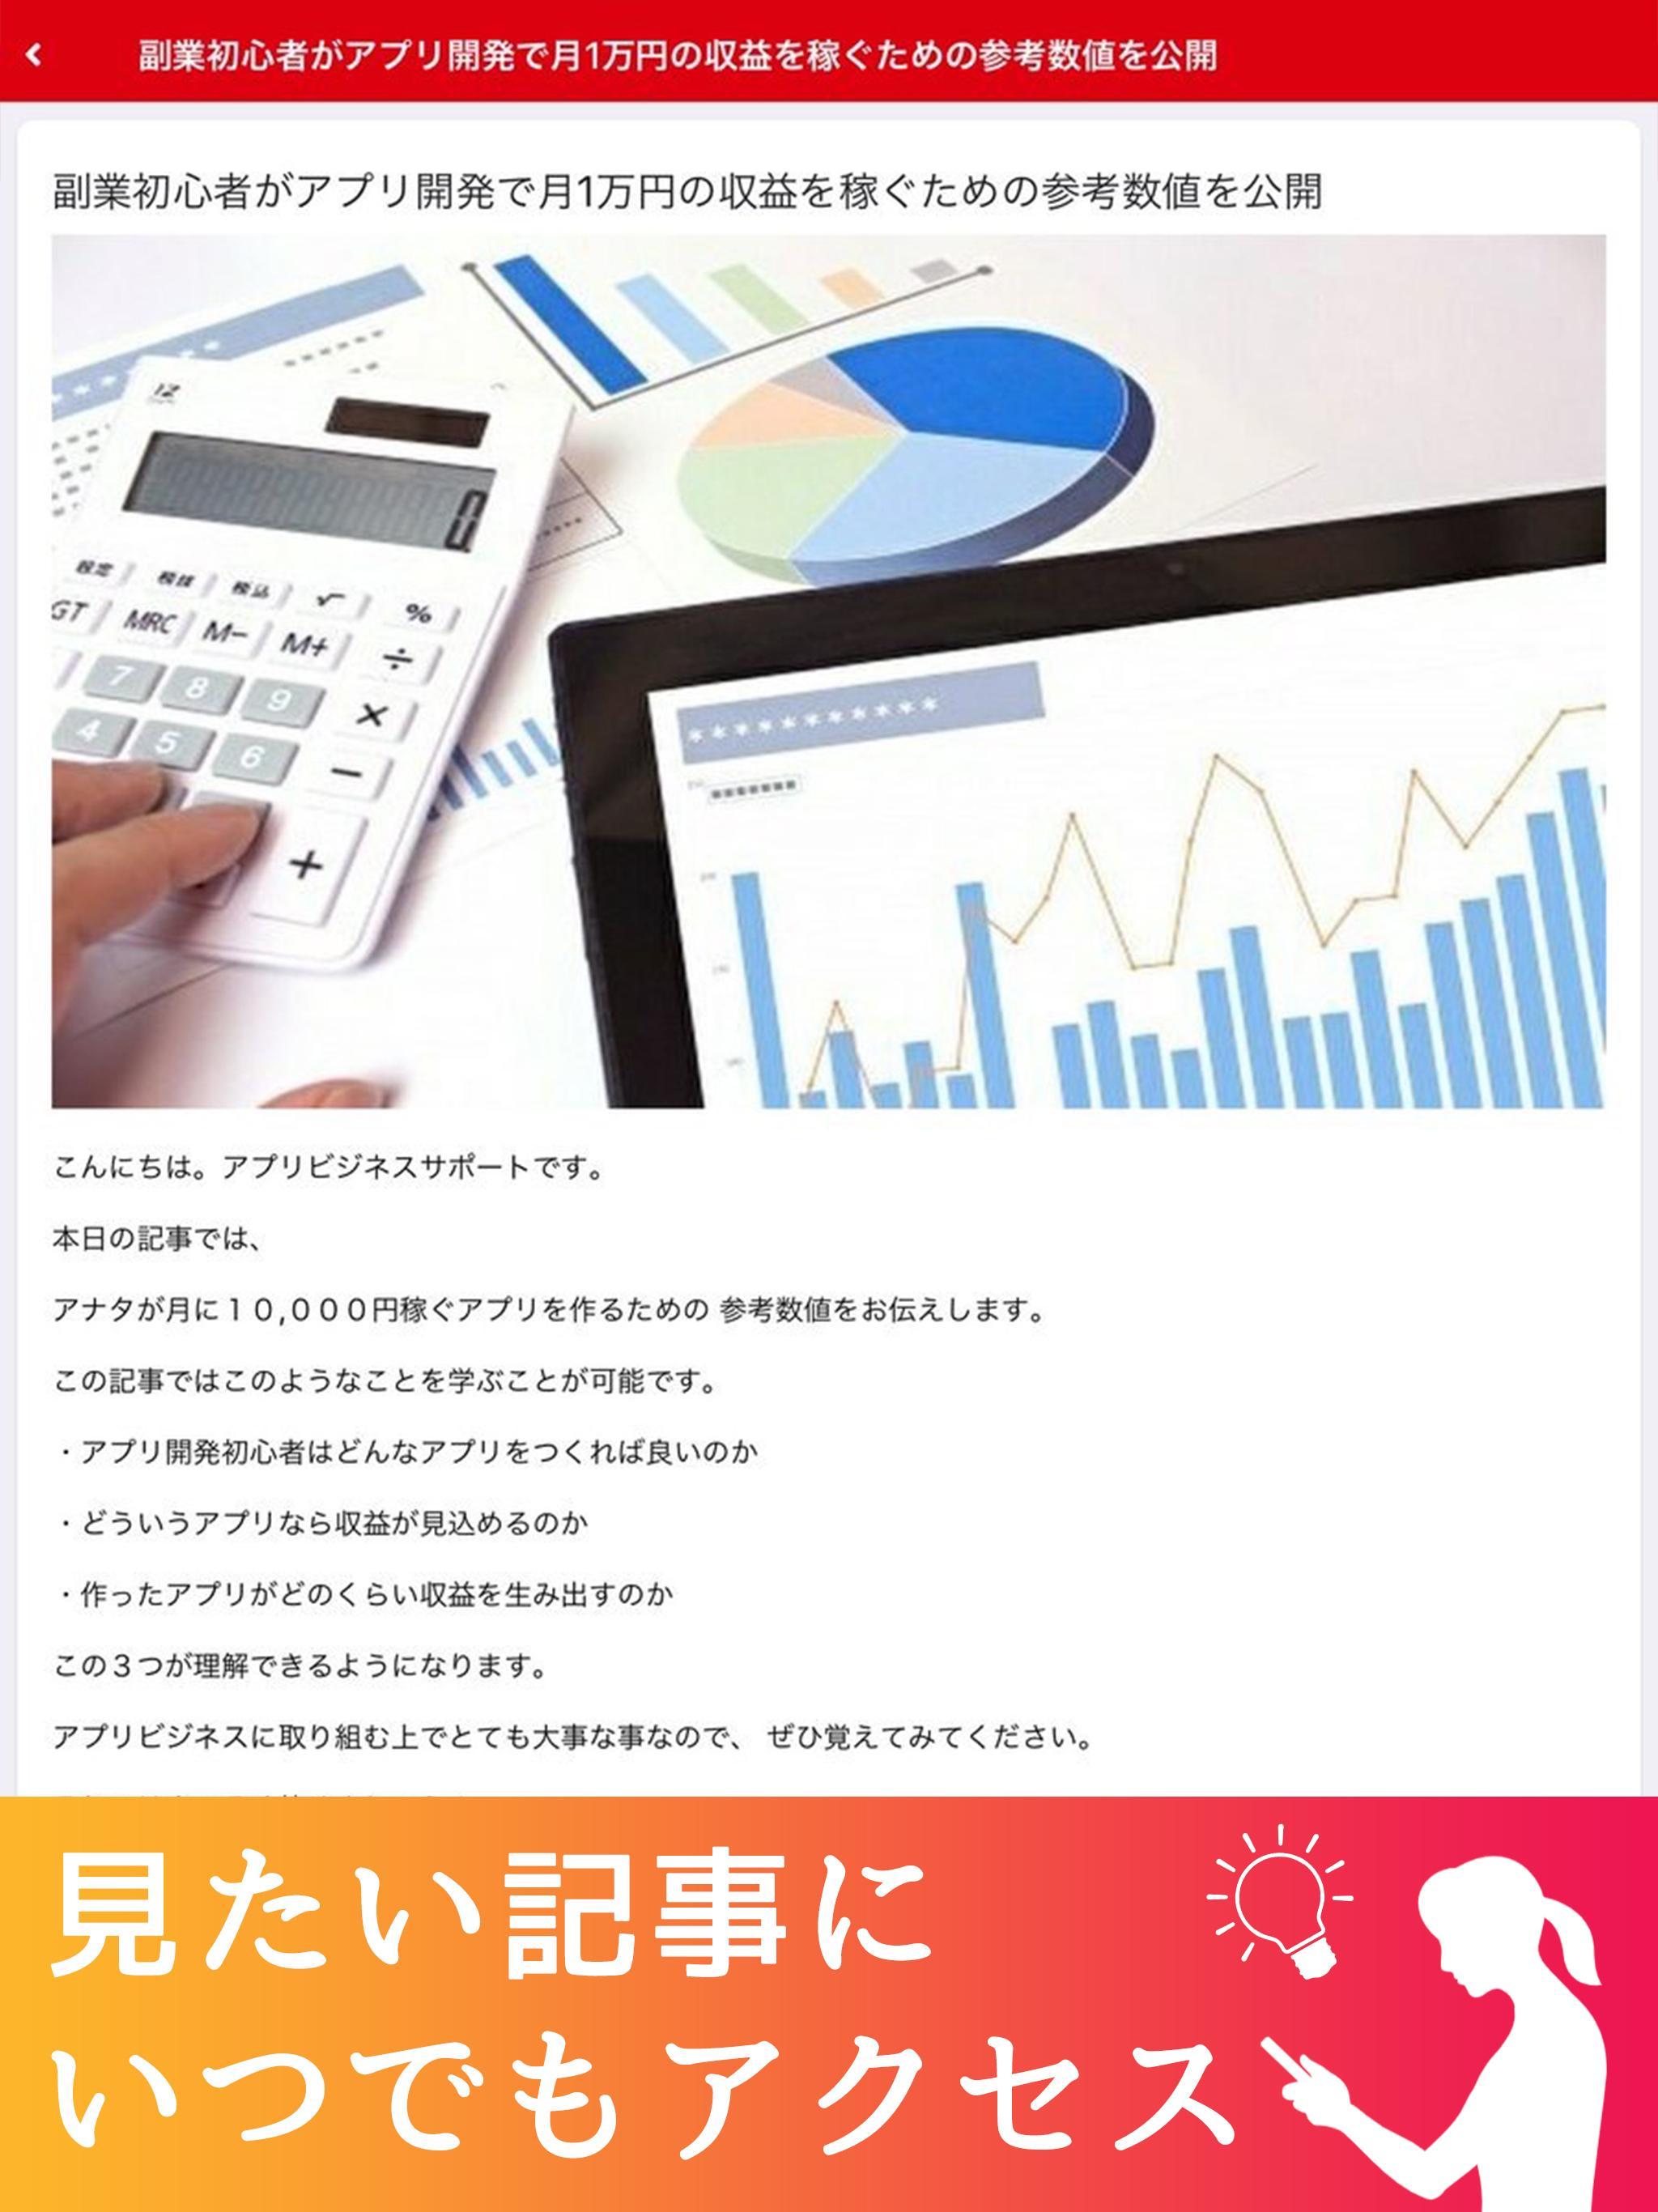 上田幸司公式アプリ 1.4.0 Screenshot 5